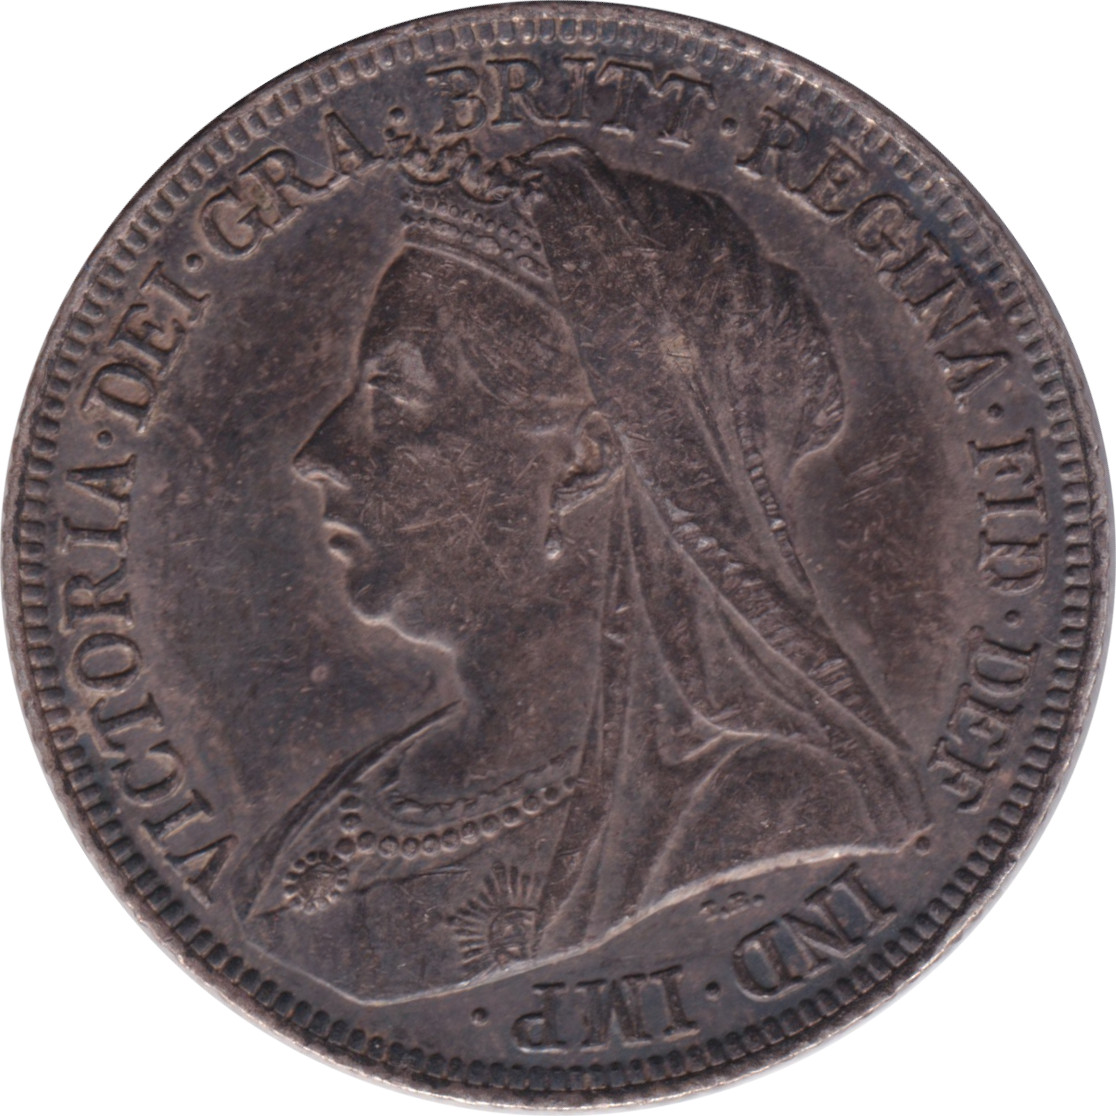 1 shilling - Victoria - Buste agé